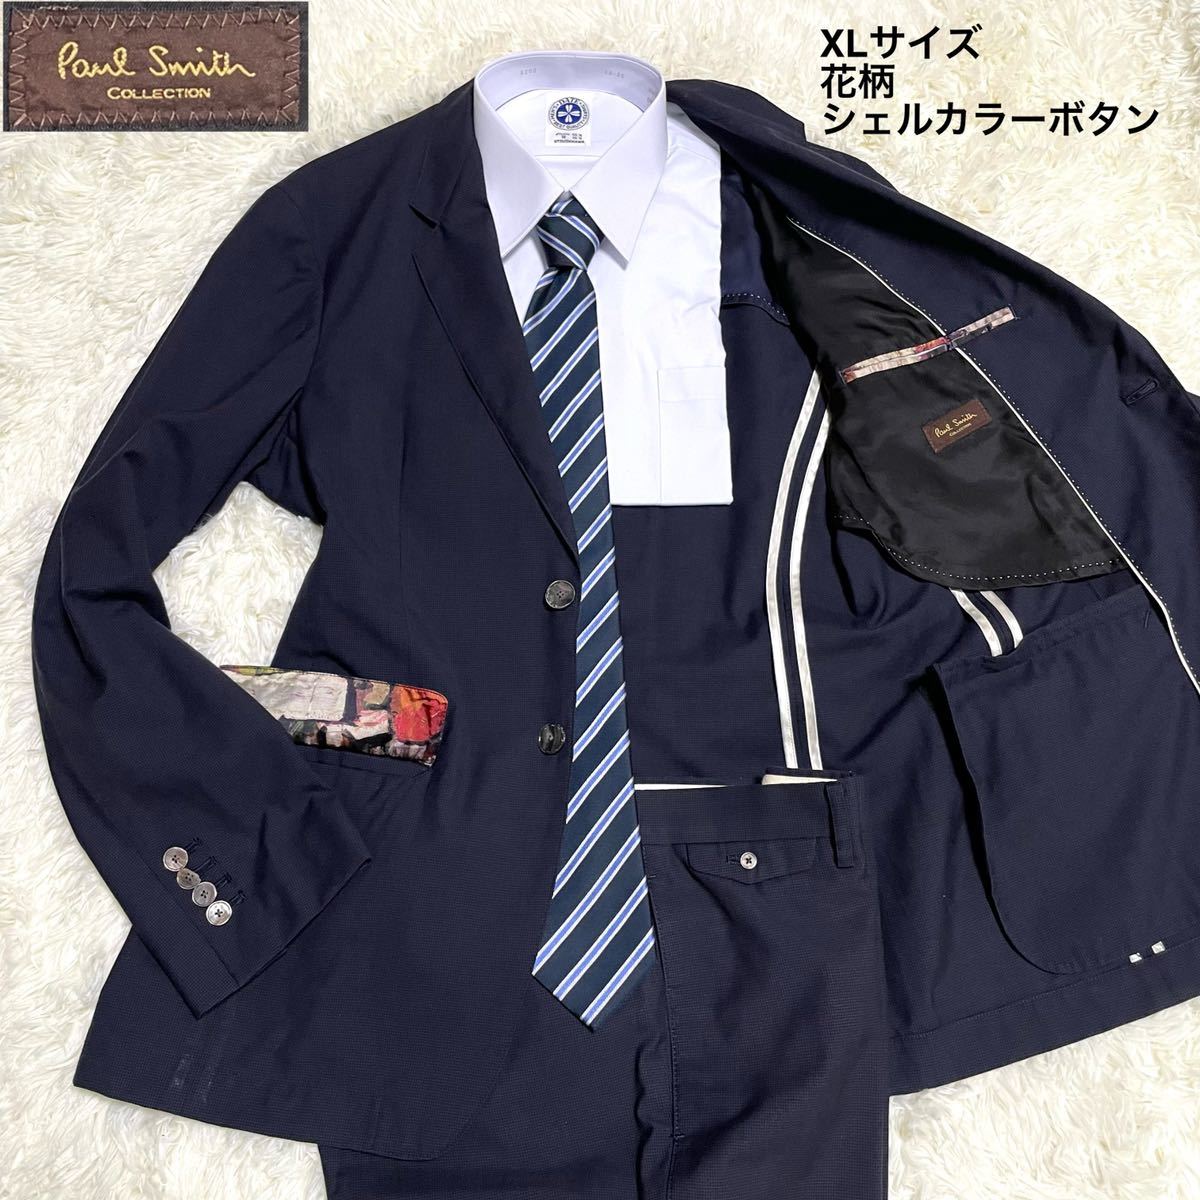 1円 極上高級ライン Paul Smith Collection セットアップスーツ XL ...